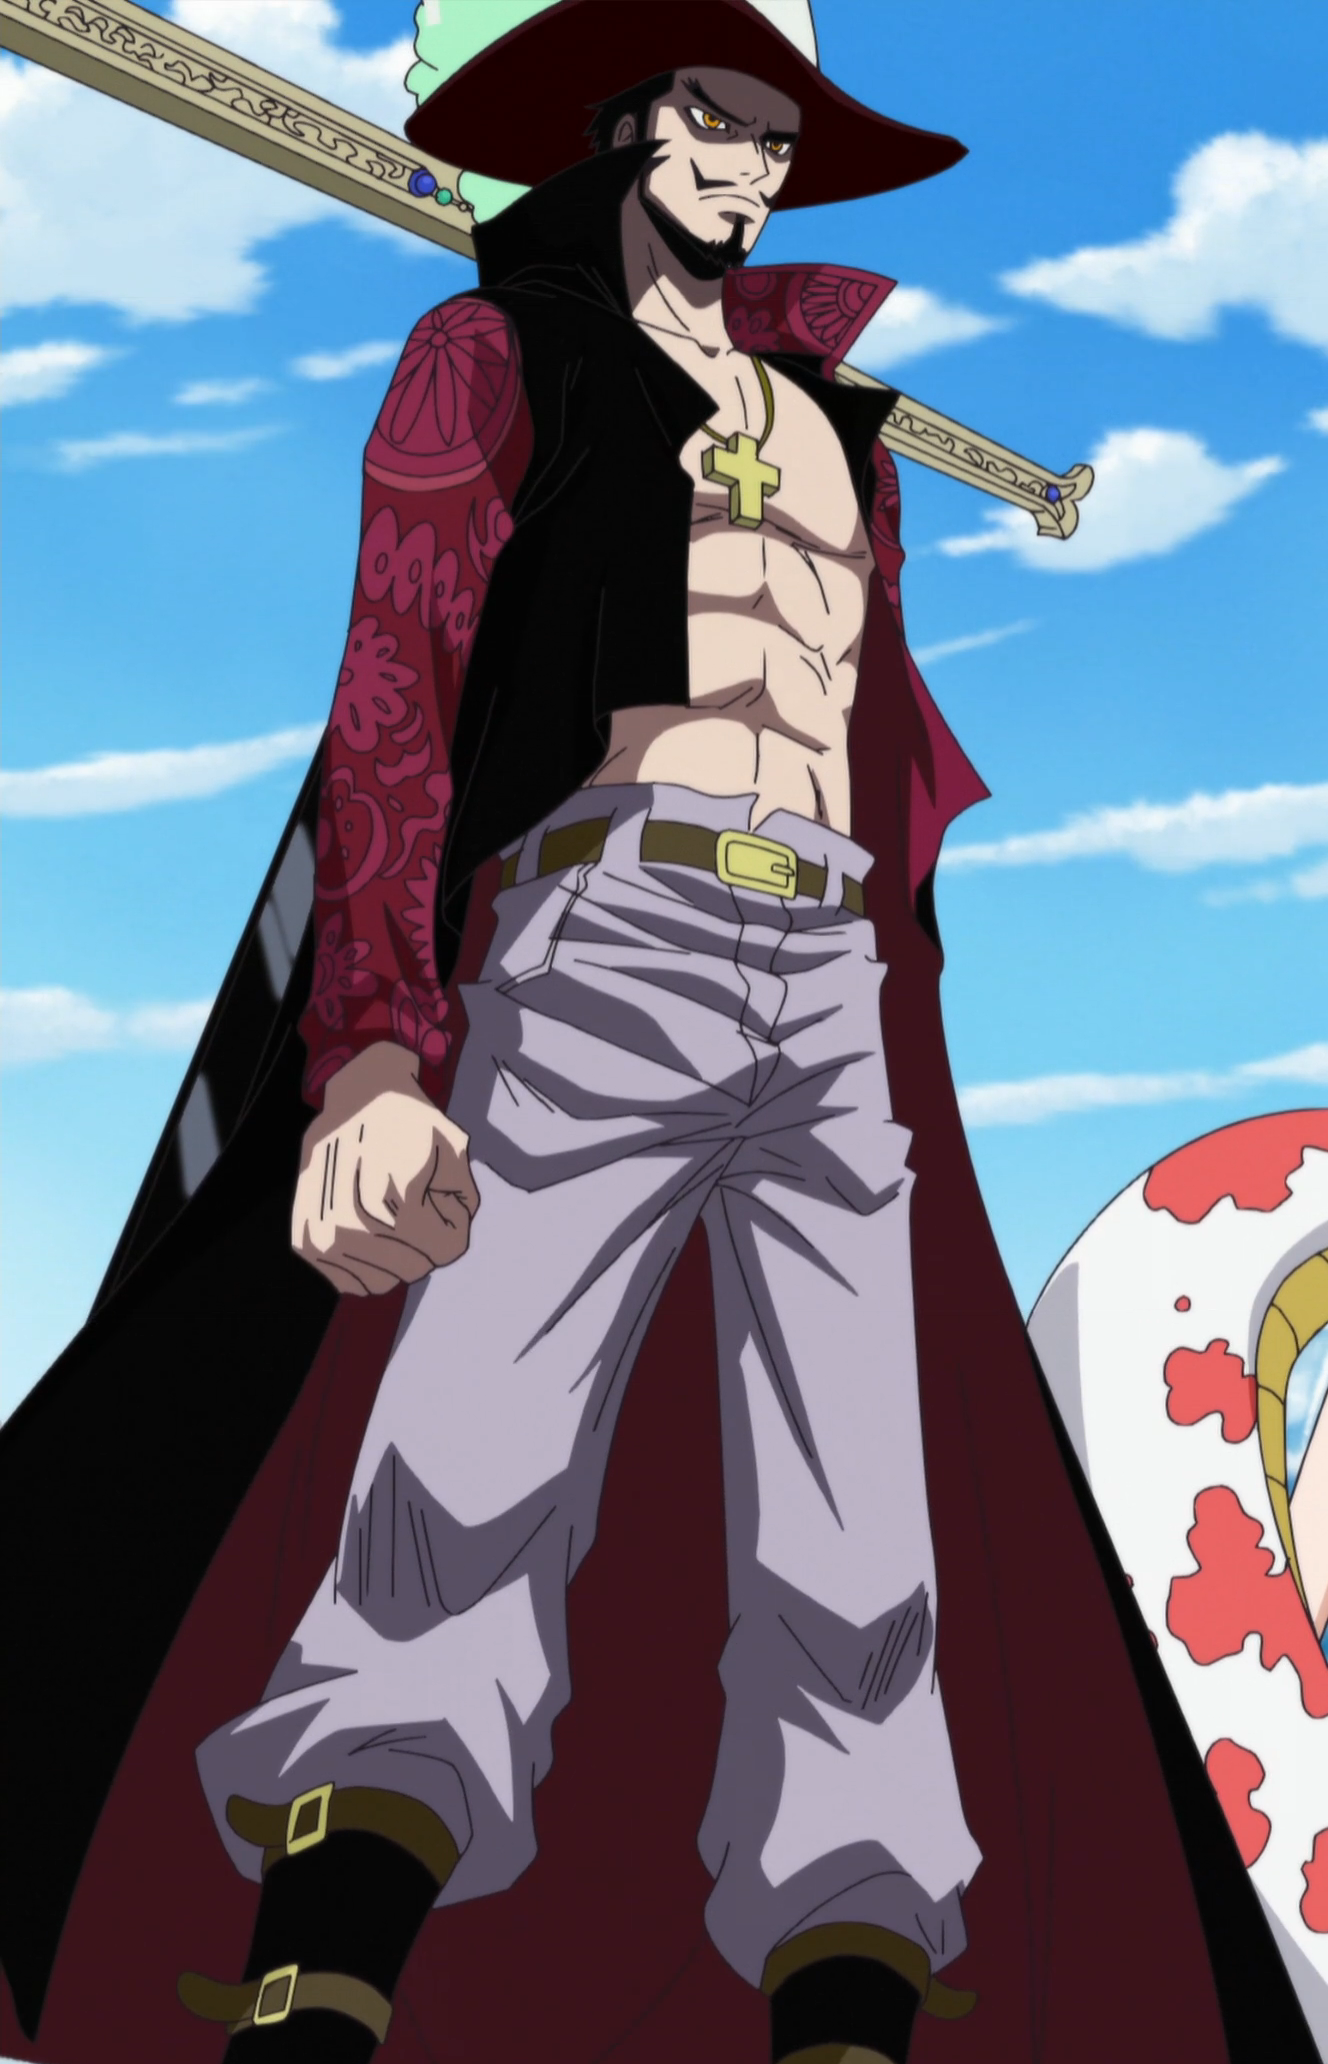 Goro Goro no Mi, One Piece Role-Play Wiki